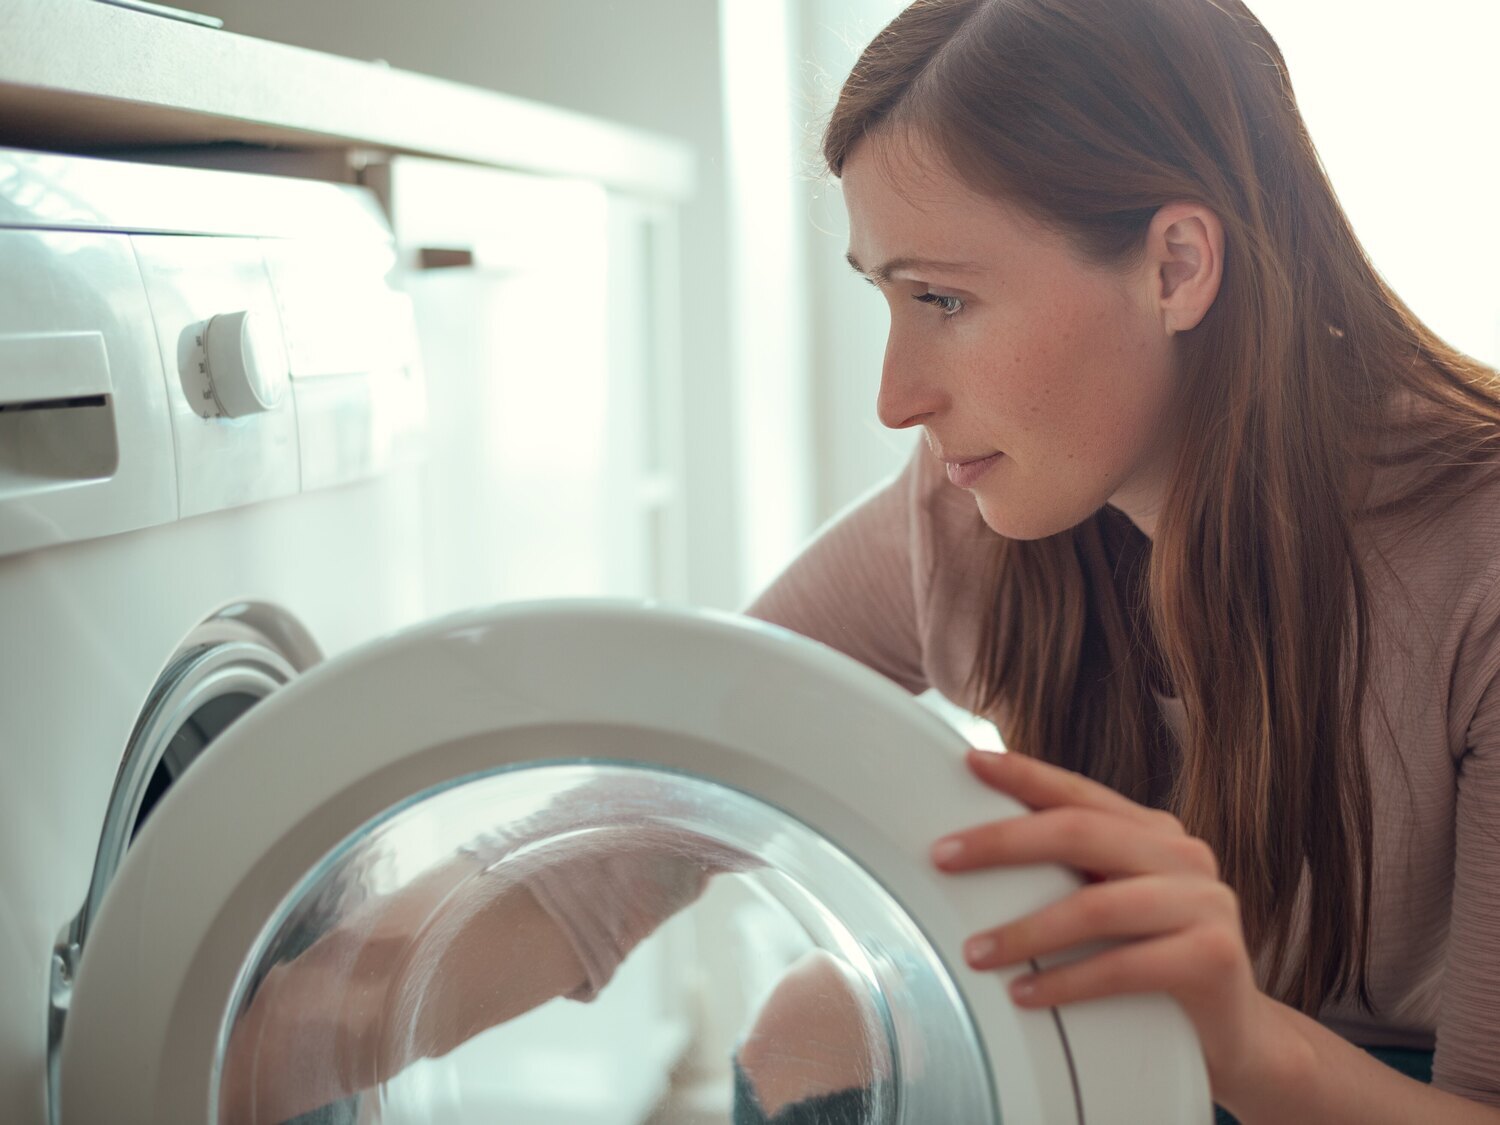 Poner la lavadora por la noche para 'ahorrar' puede salir muy caro: multas de hasta 6.000 euros